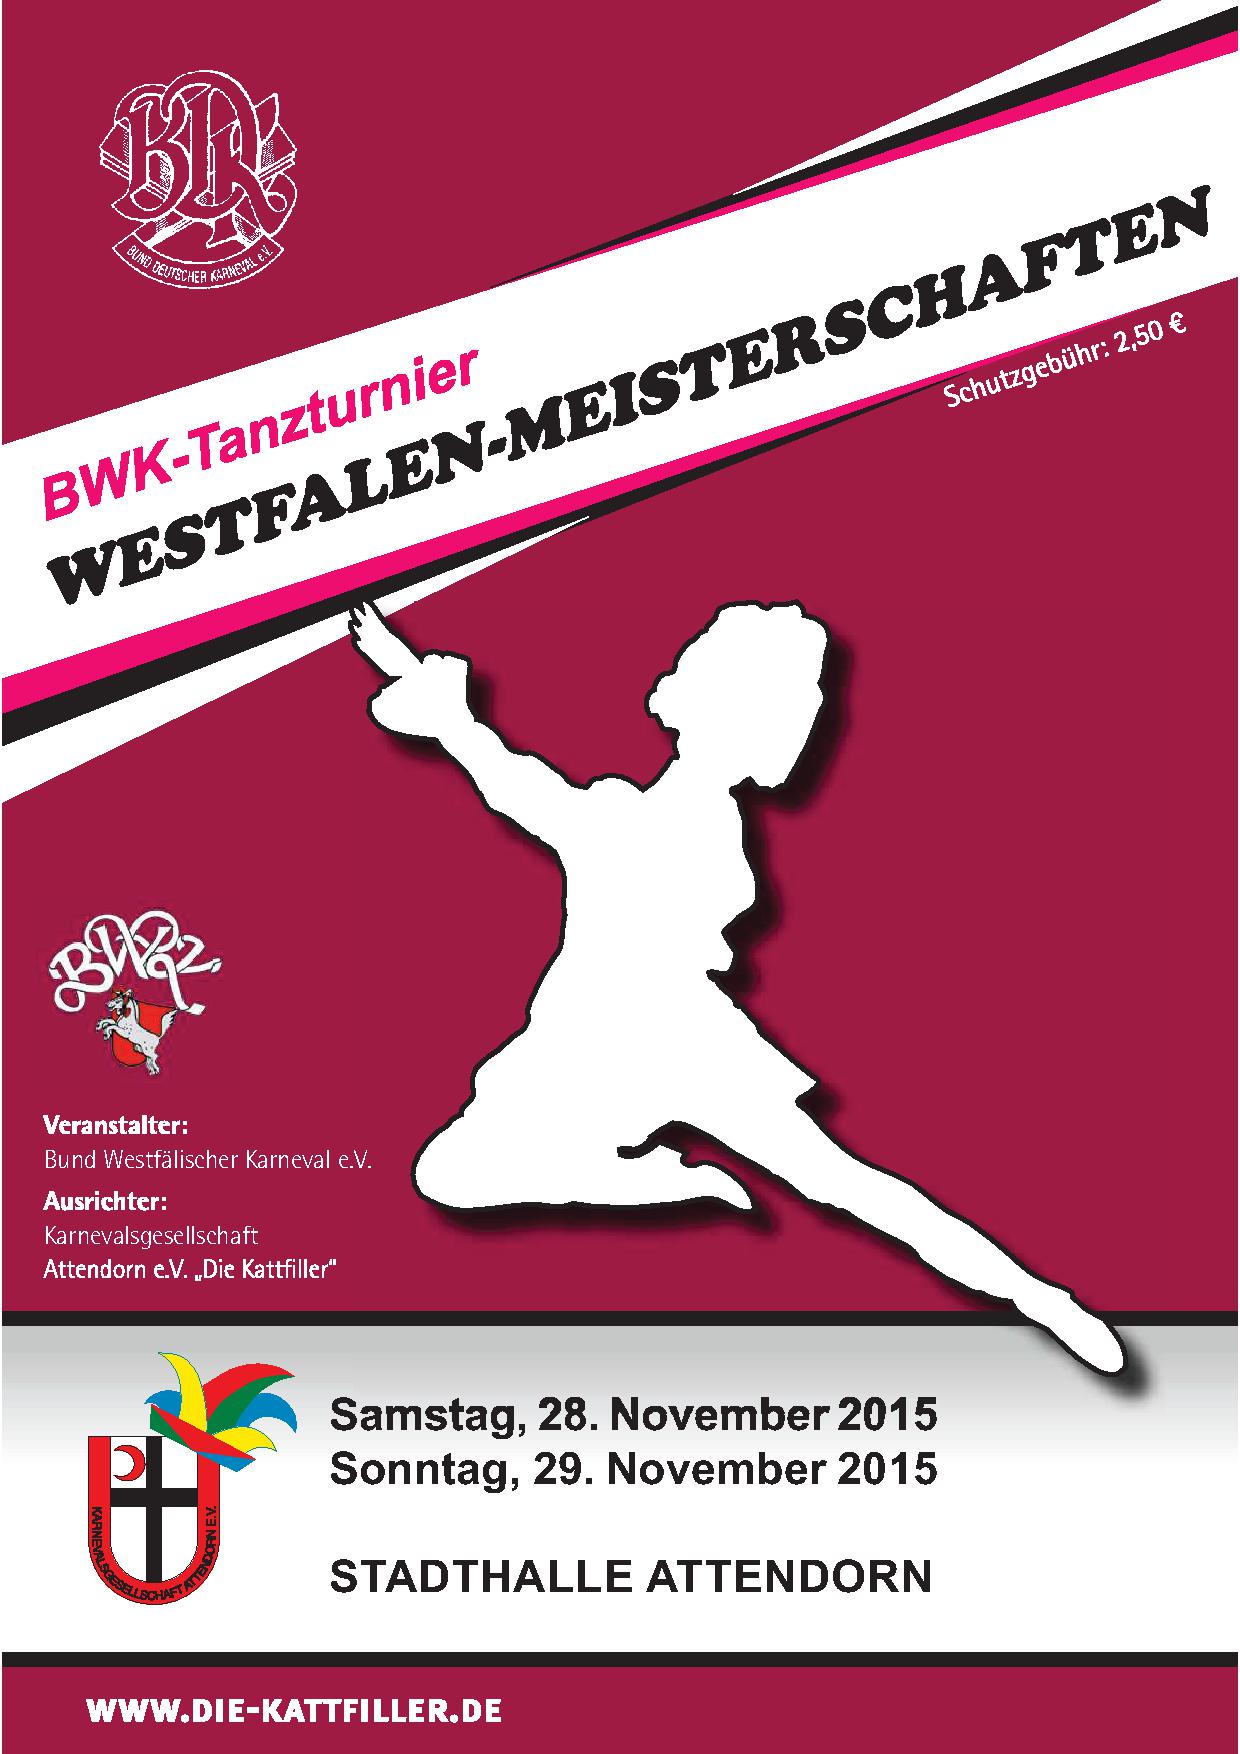 Ergebnisse BWK-Tanzturnier Westfalenmeisterschaften 2015